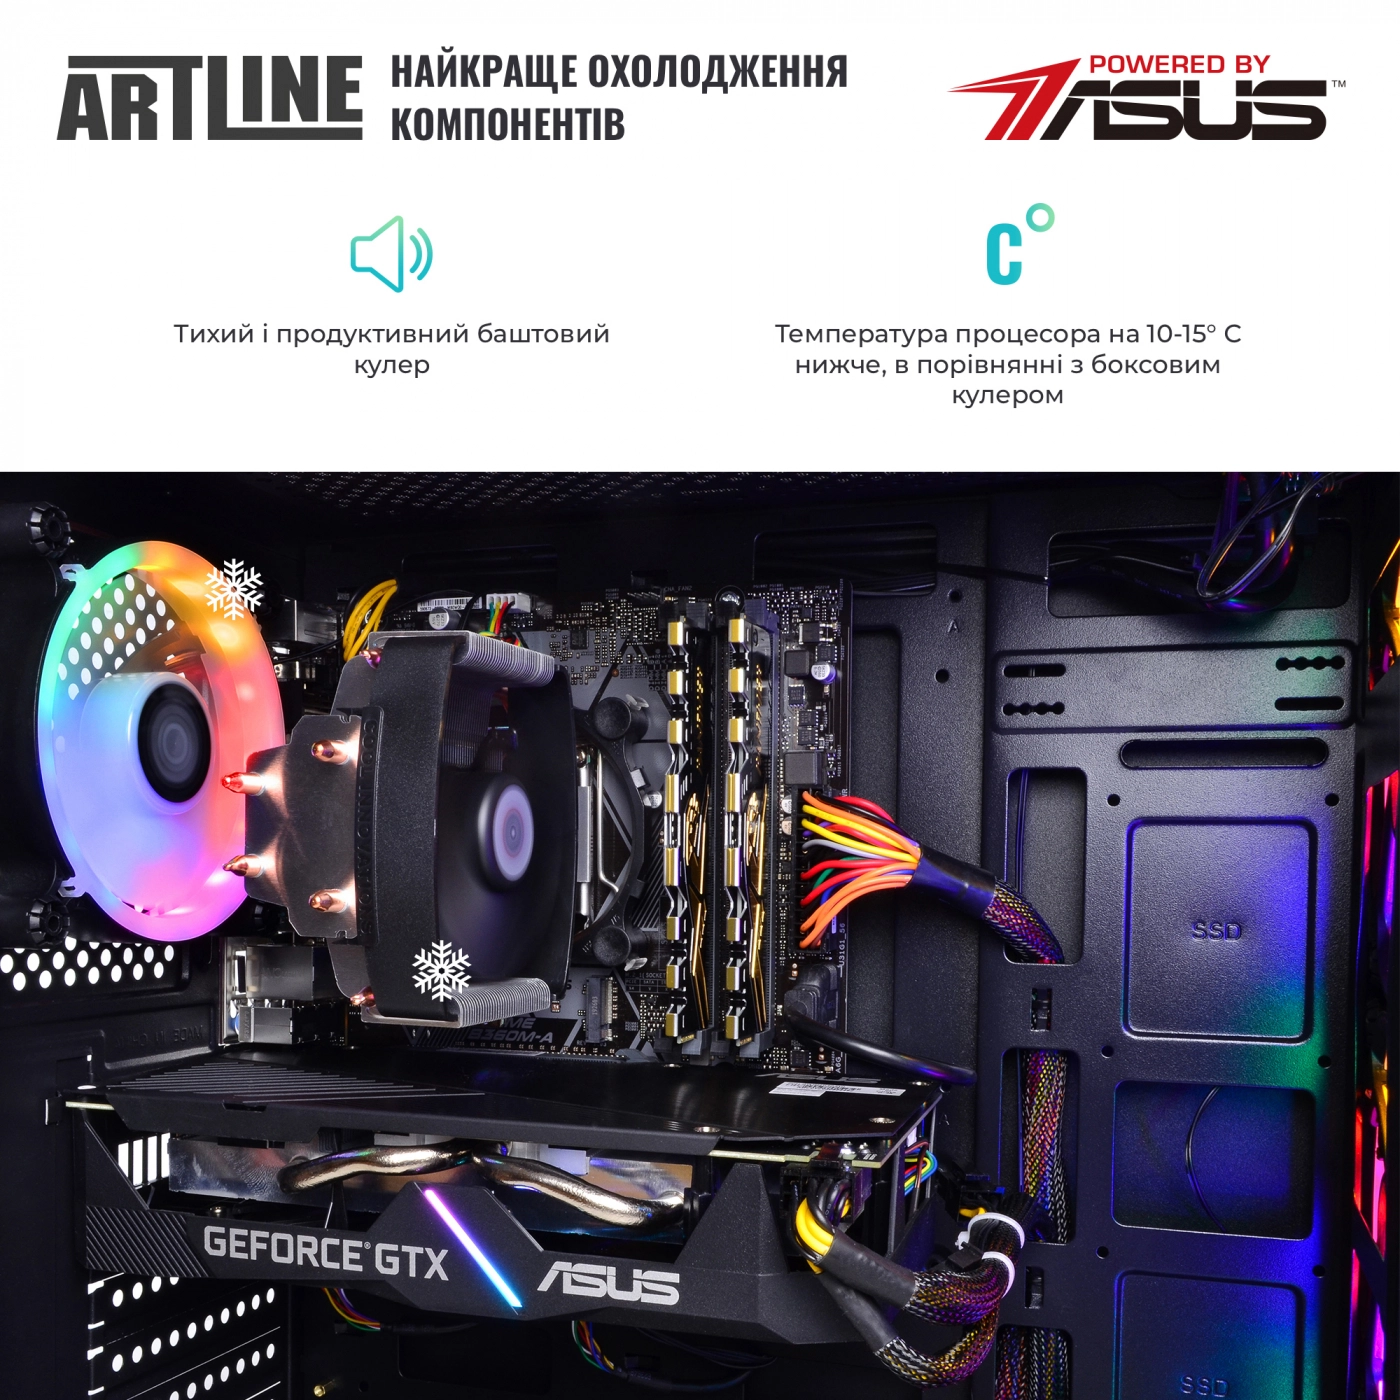 Купить Компьютер ARTLINE Gaming X48v16 - фото 7